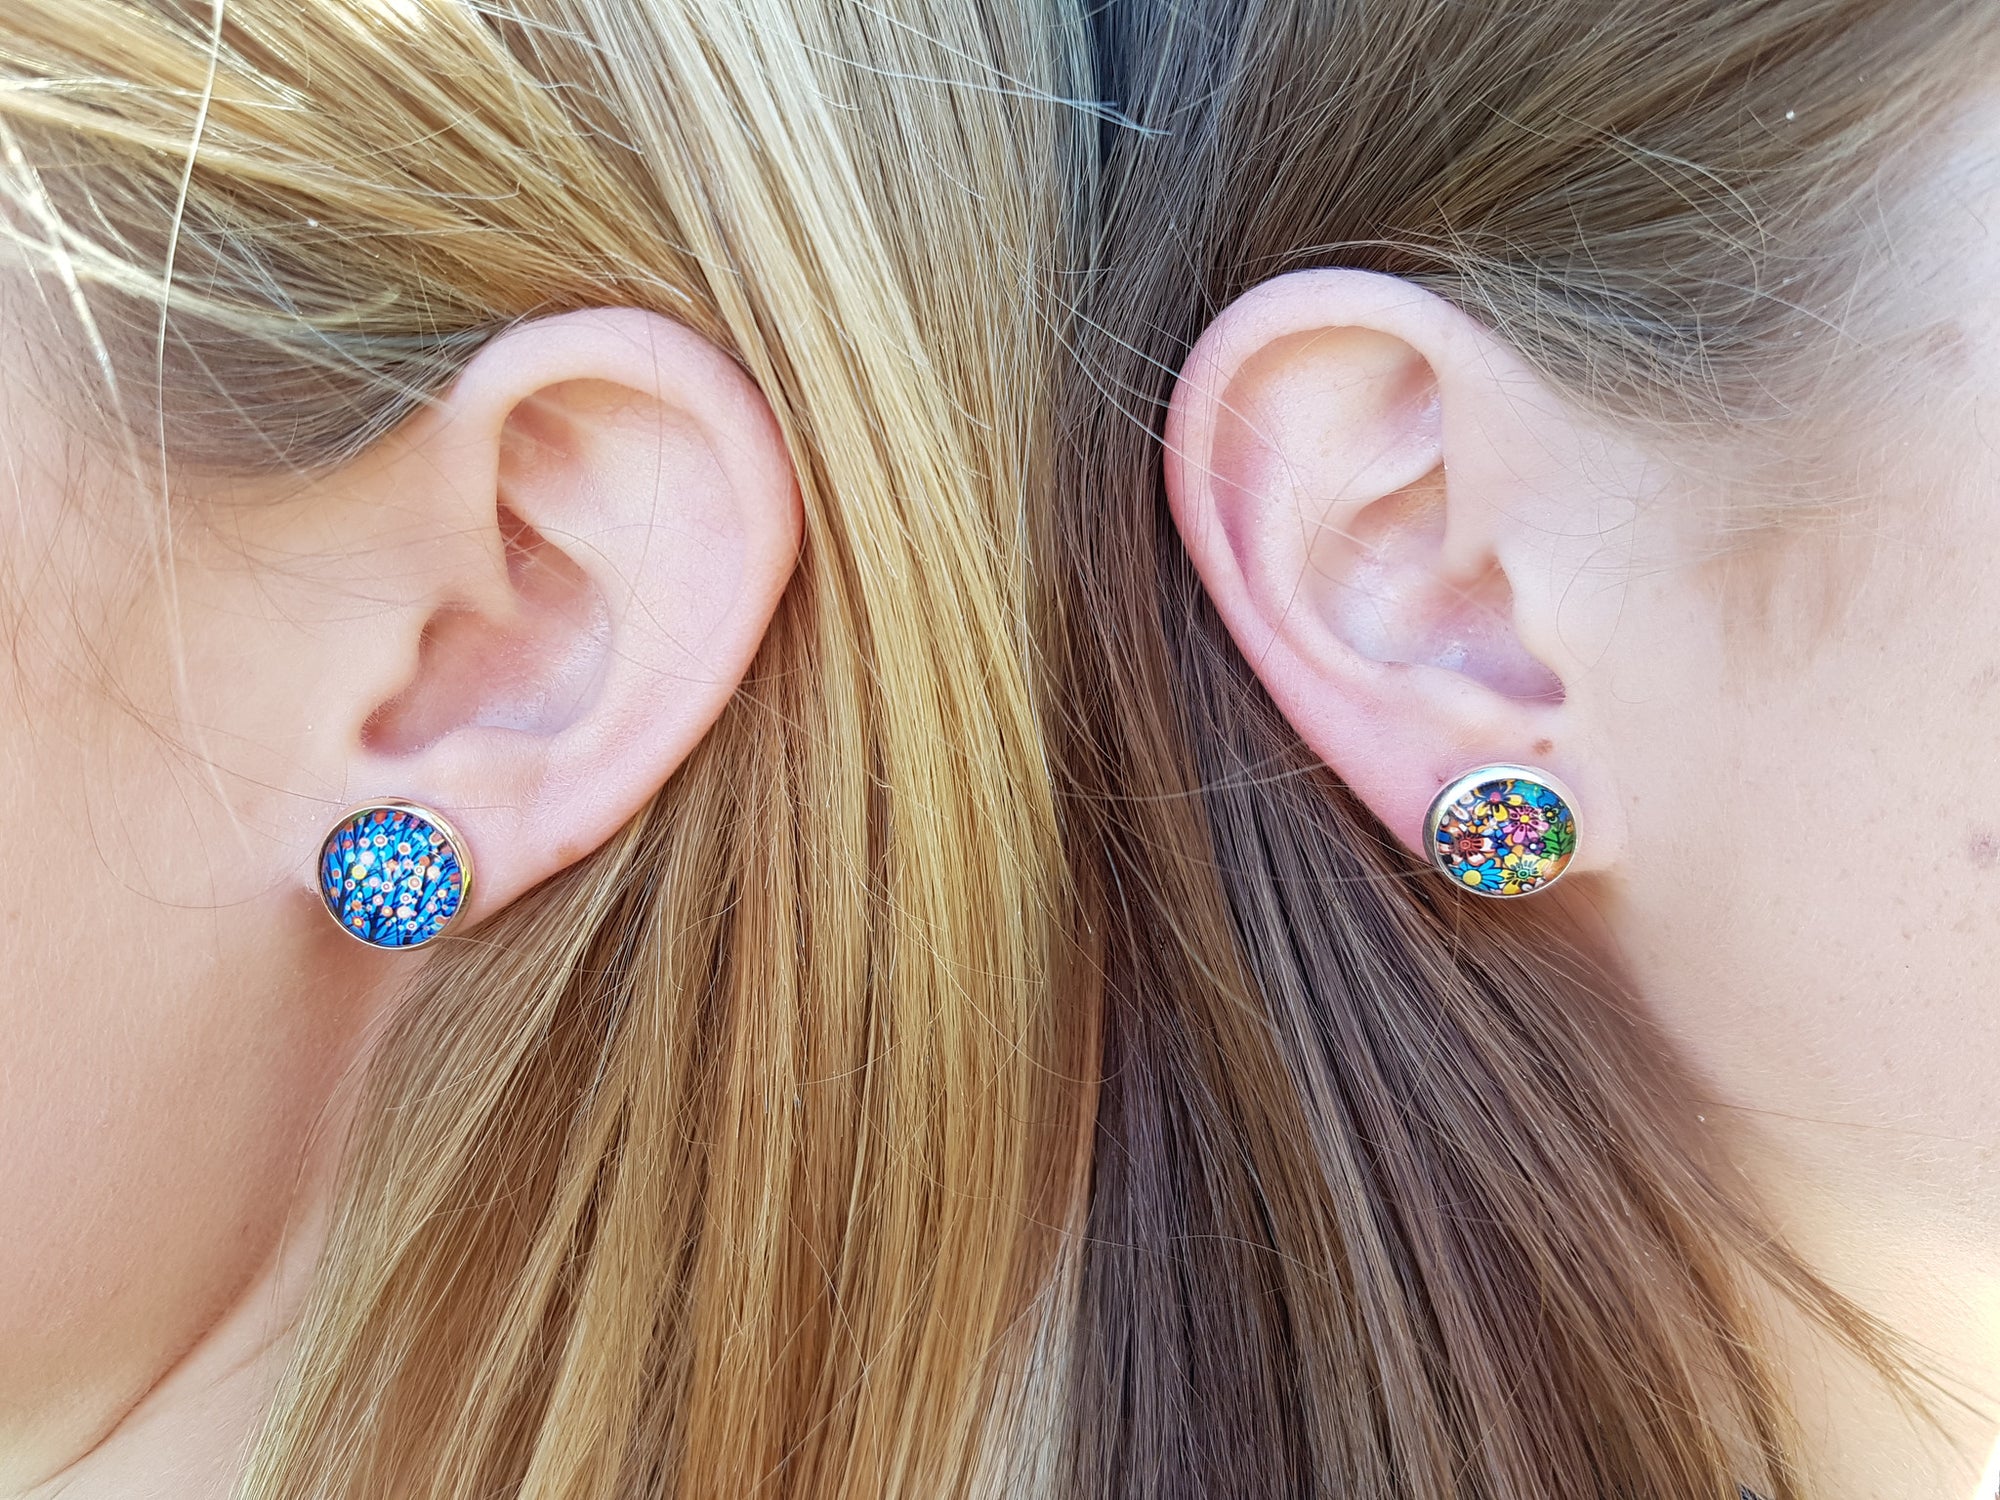 Funky Tree of Life Stud Earrings | Ella & Fern